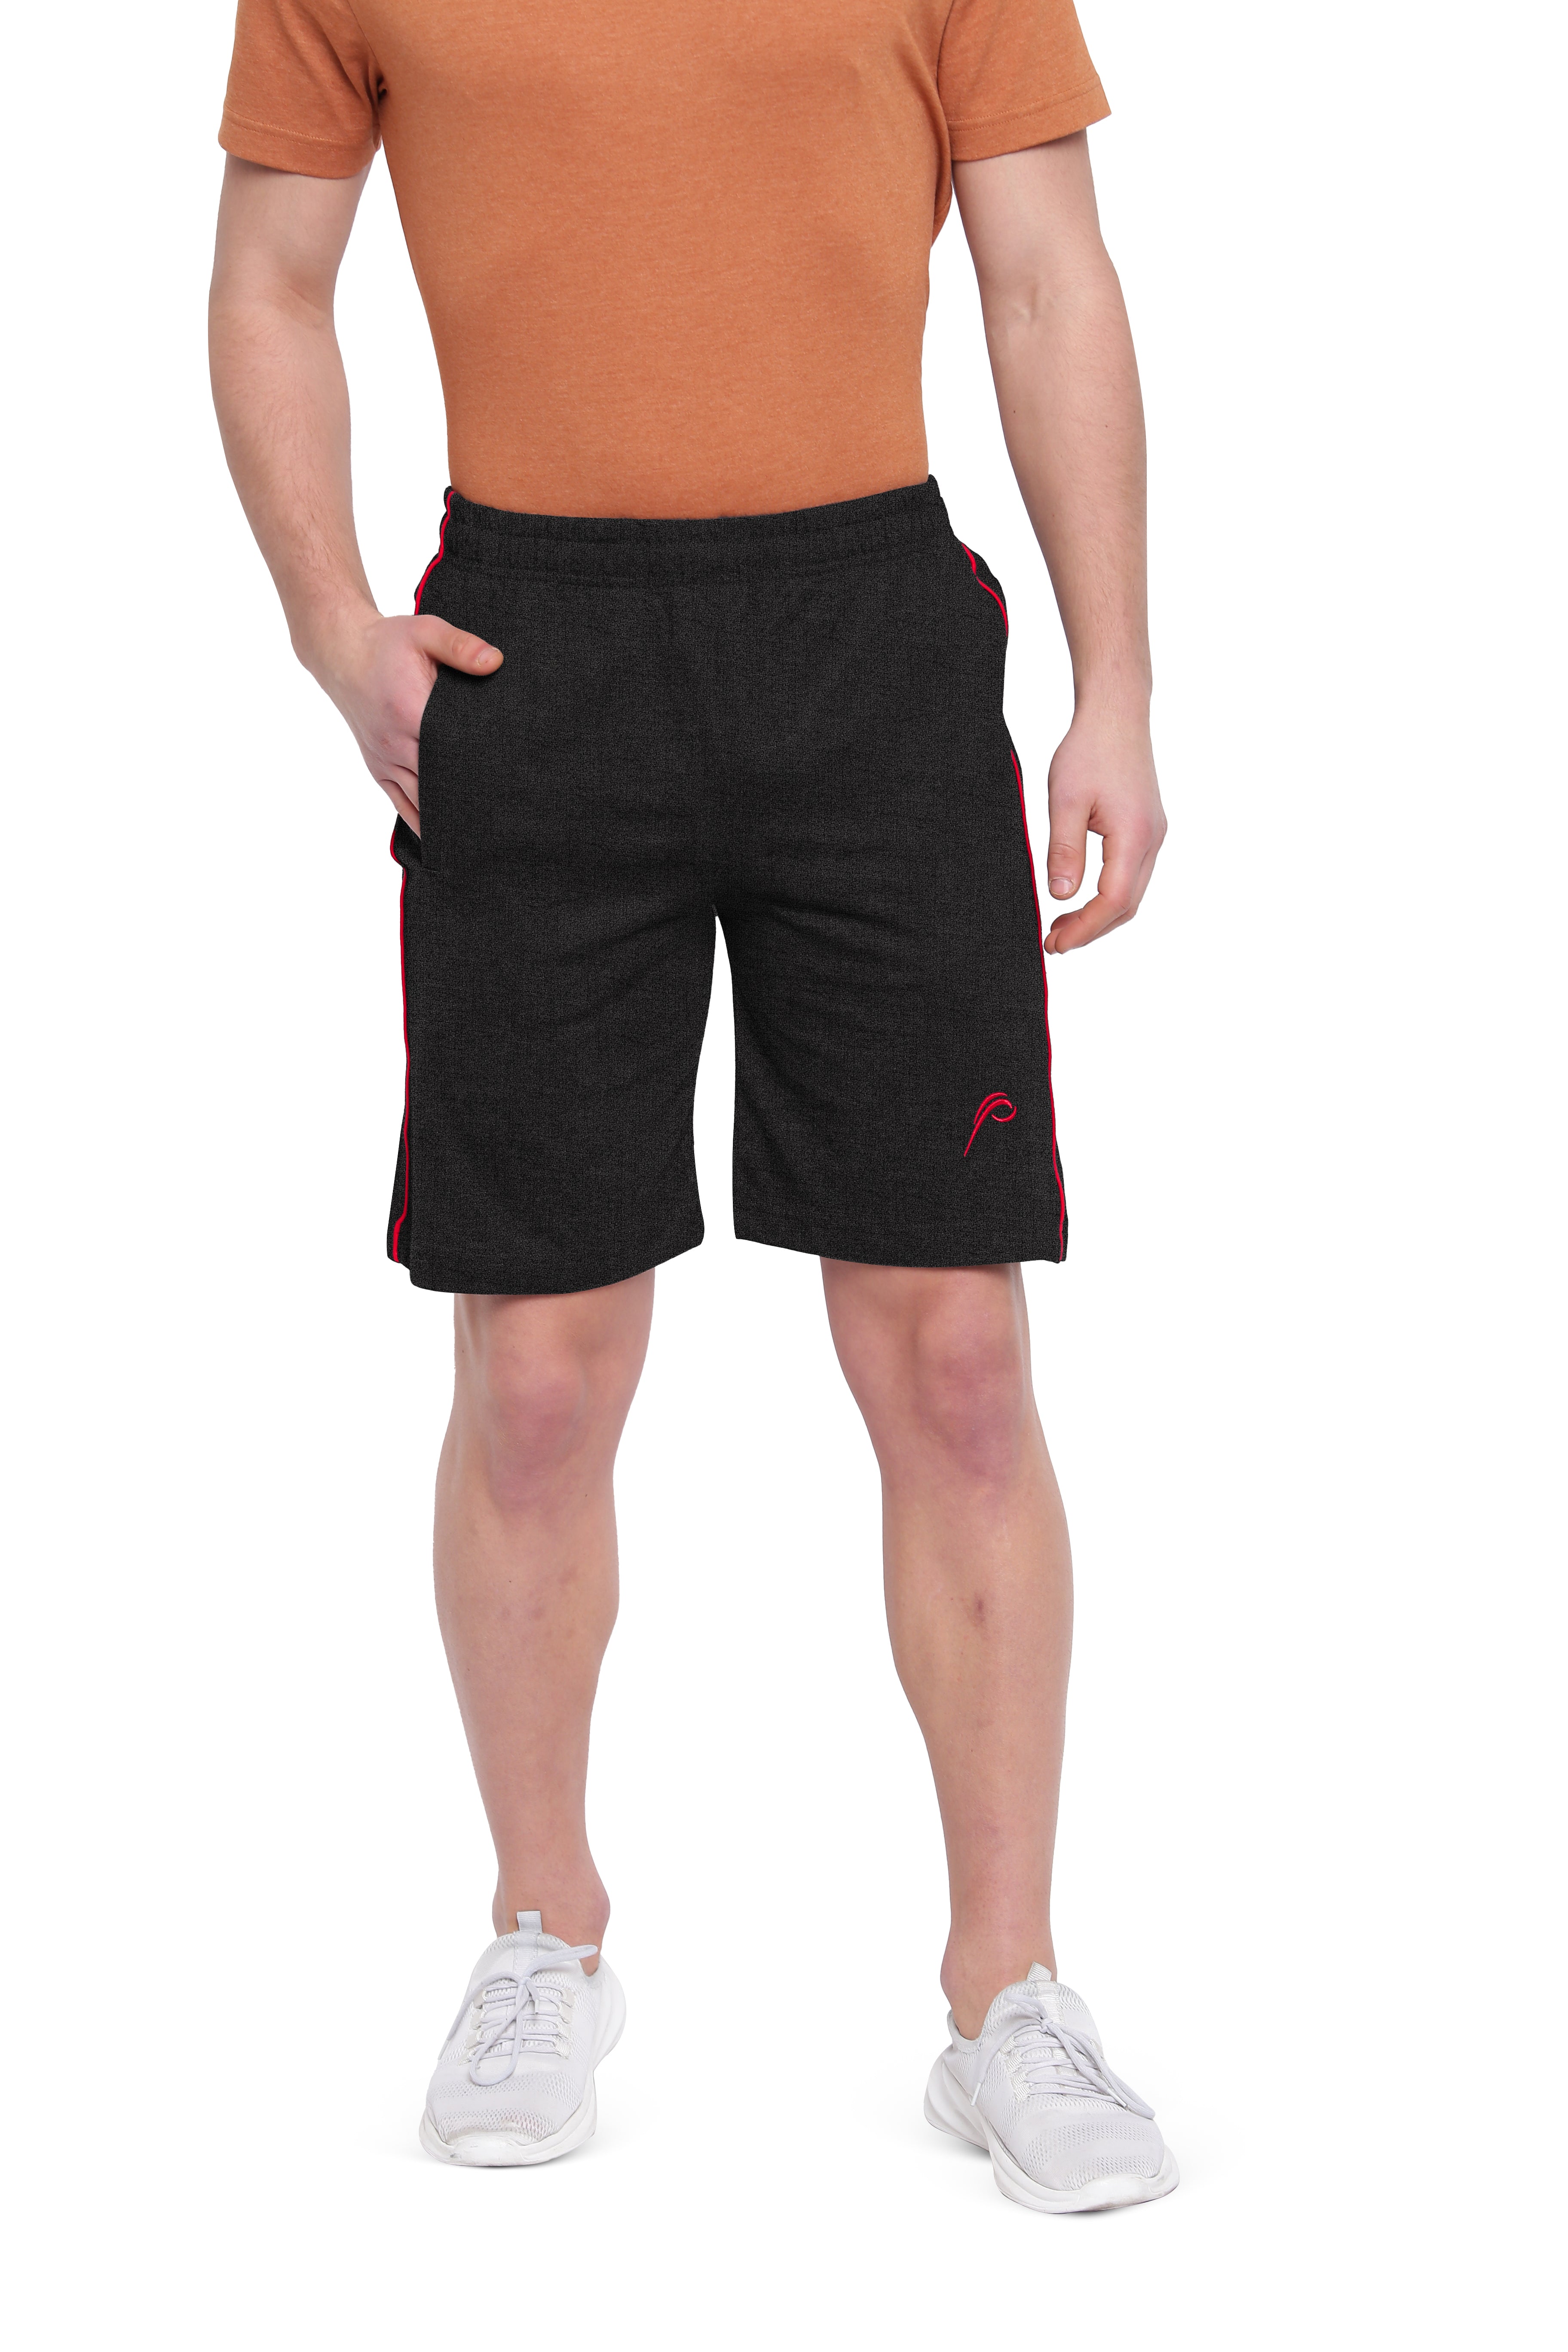 Poomer Casual Shorts - Black